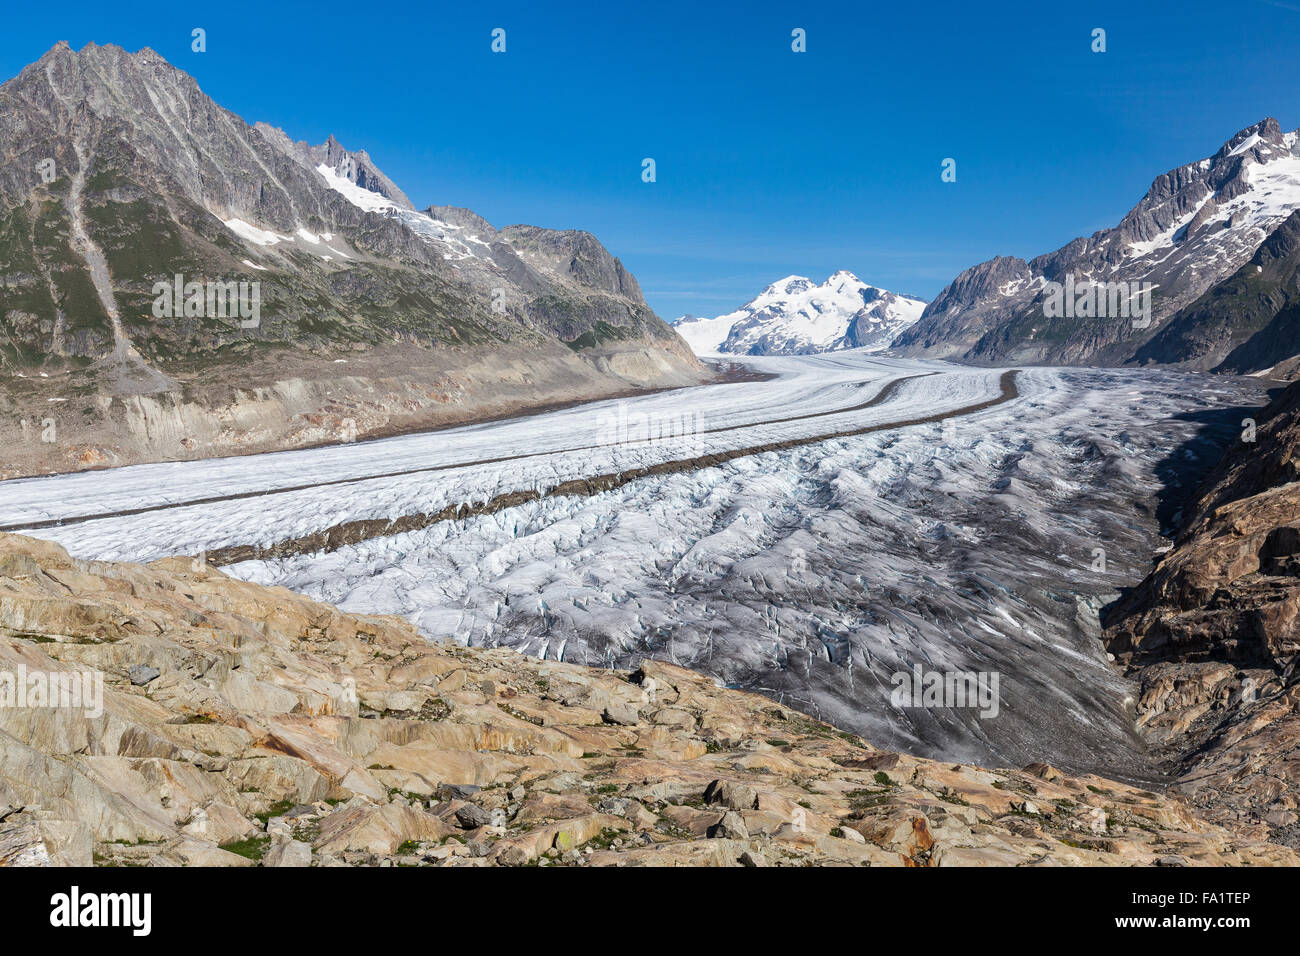 Der Aletschgletscher. Aletschgletscher. Die Ostbernischen Alpen im Schweizer Kanton Wallis. Schweiz. Stockfoto